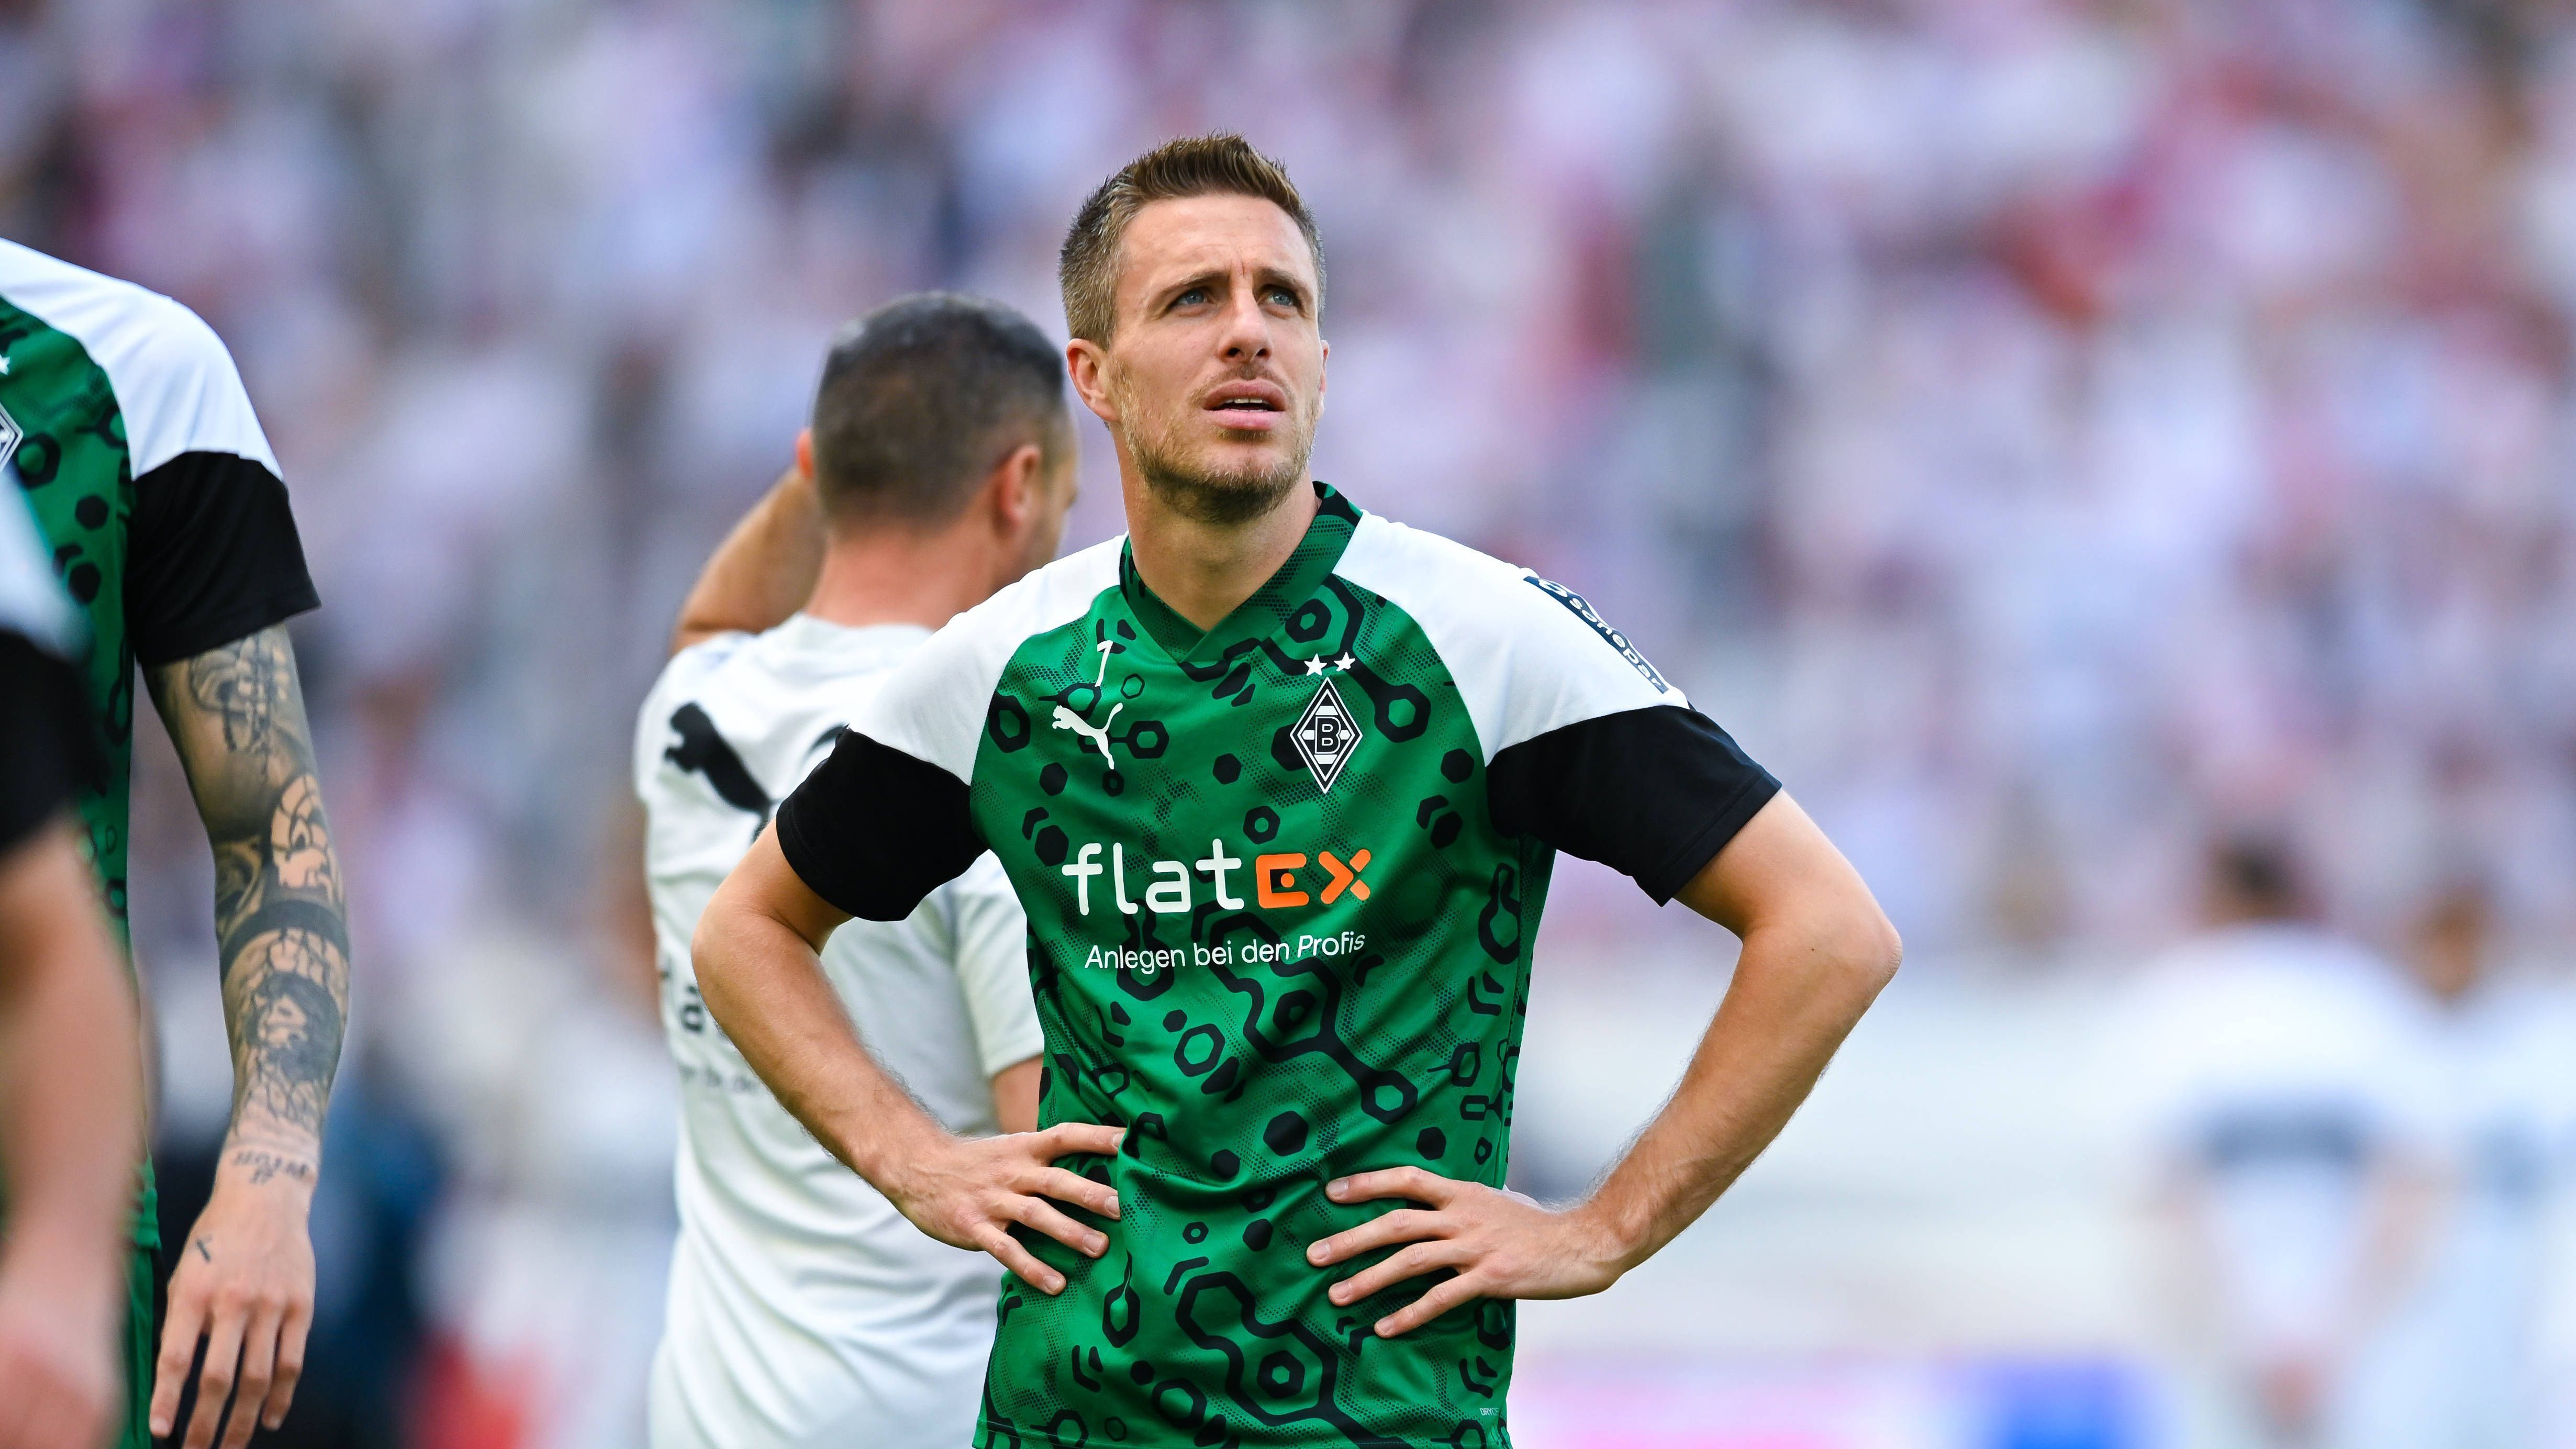 <strong>Patrick Herrmann (Borussia Mönchengladbach)</strong><br>Seit 2010 trug Patrick Herrmann das Trikot von Borussia Mönchengladbach. Nach 420 Profispielen für die "Fohlen" sagt der 33-Jährige ade. Unter Joachim Löw lief er zudem zweimal für die deutsche Nationalmannschaft auf. Ausgebildet wurde Herrmann beim 1. FC Saarbrücken.